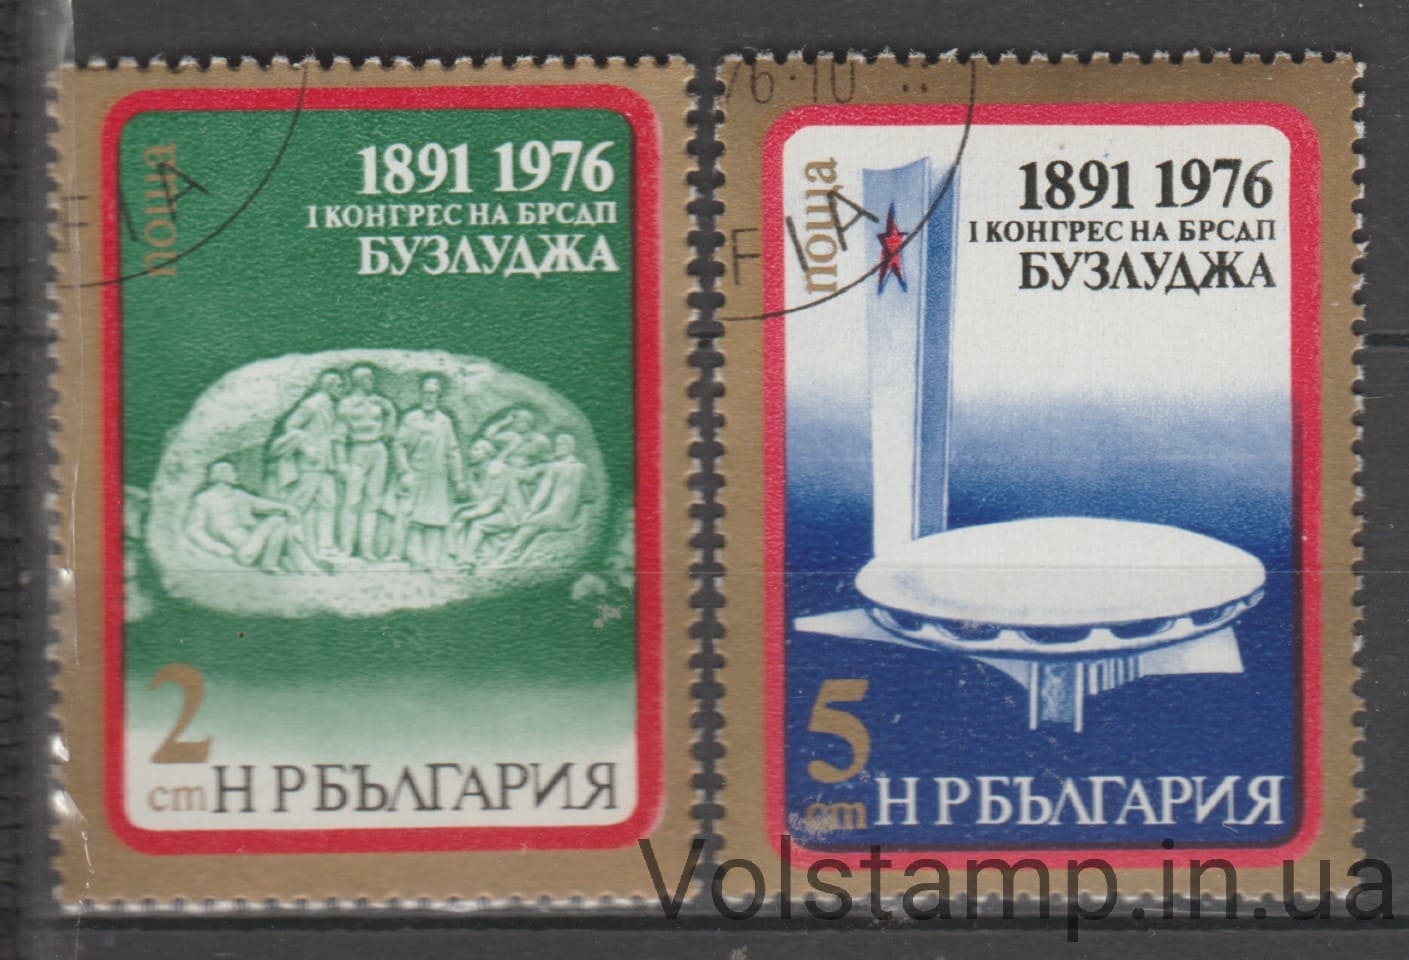 1976 Болгария Серия марок (Съезд Болгарской социал-демократической партии) Гашеные №2485-2486